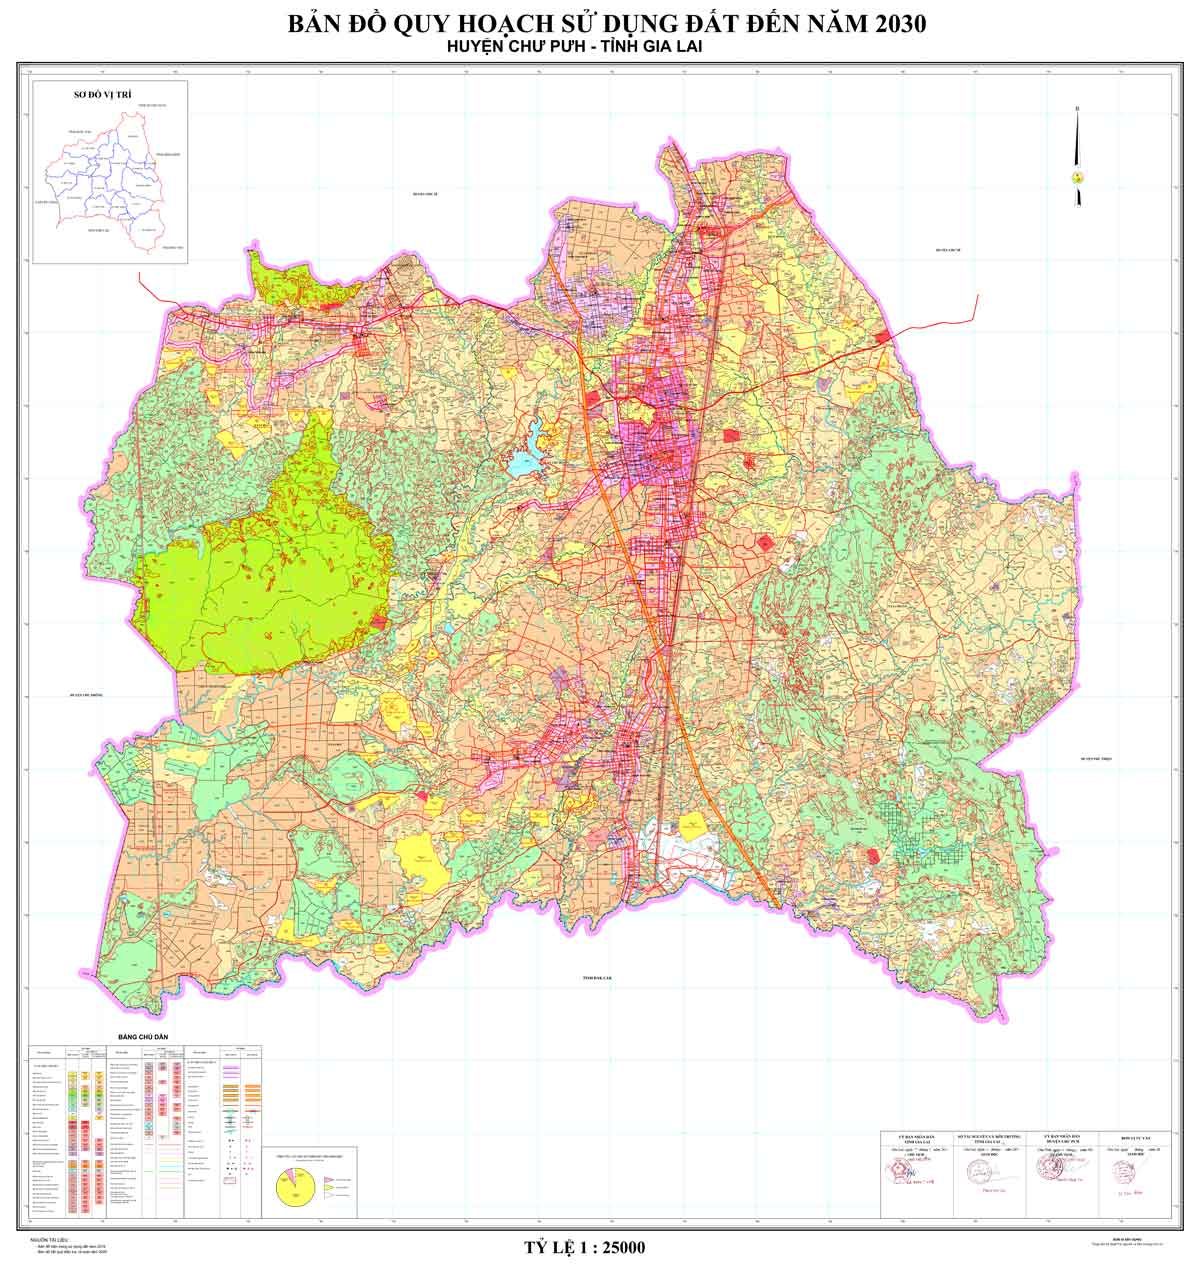 Bản đồ QHSDĐ huyện Chư Pưh đến năm 2030